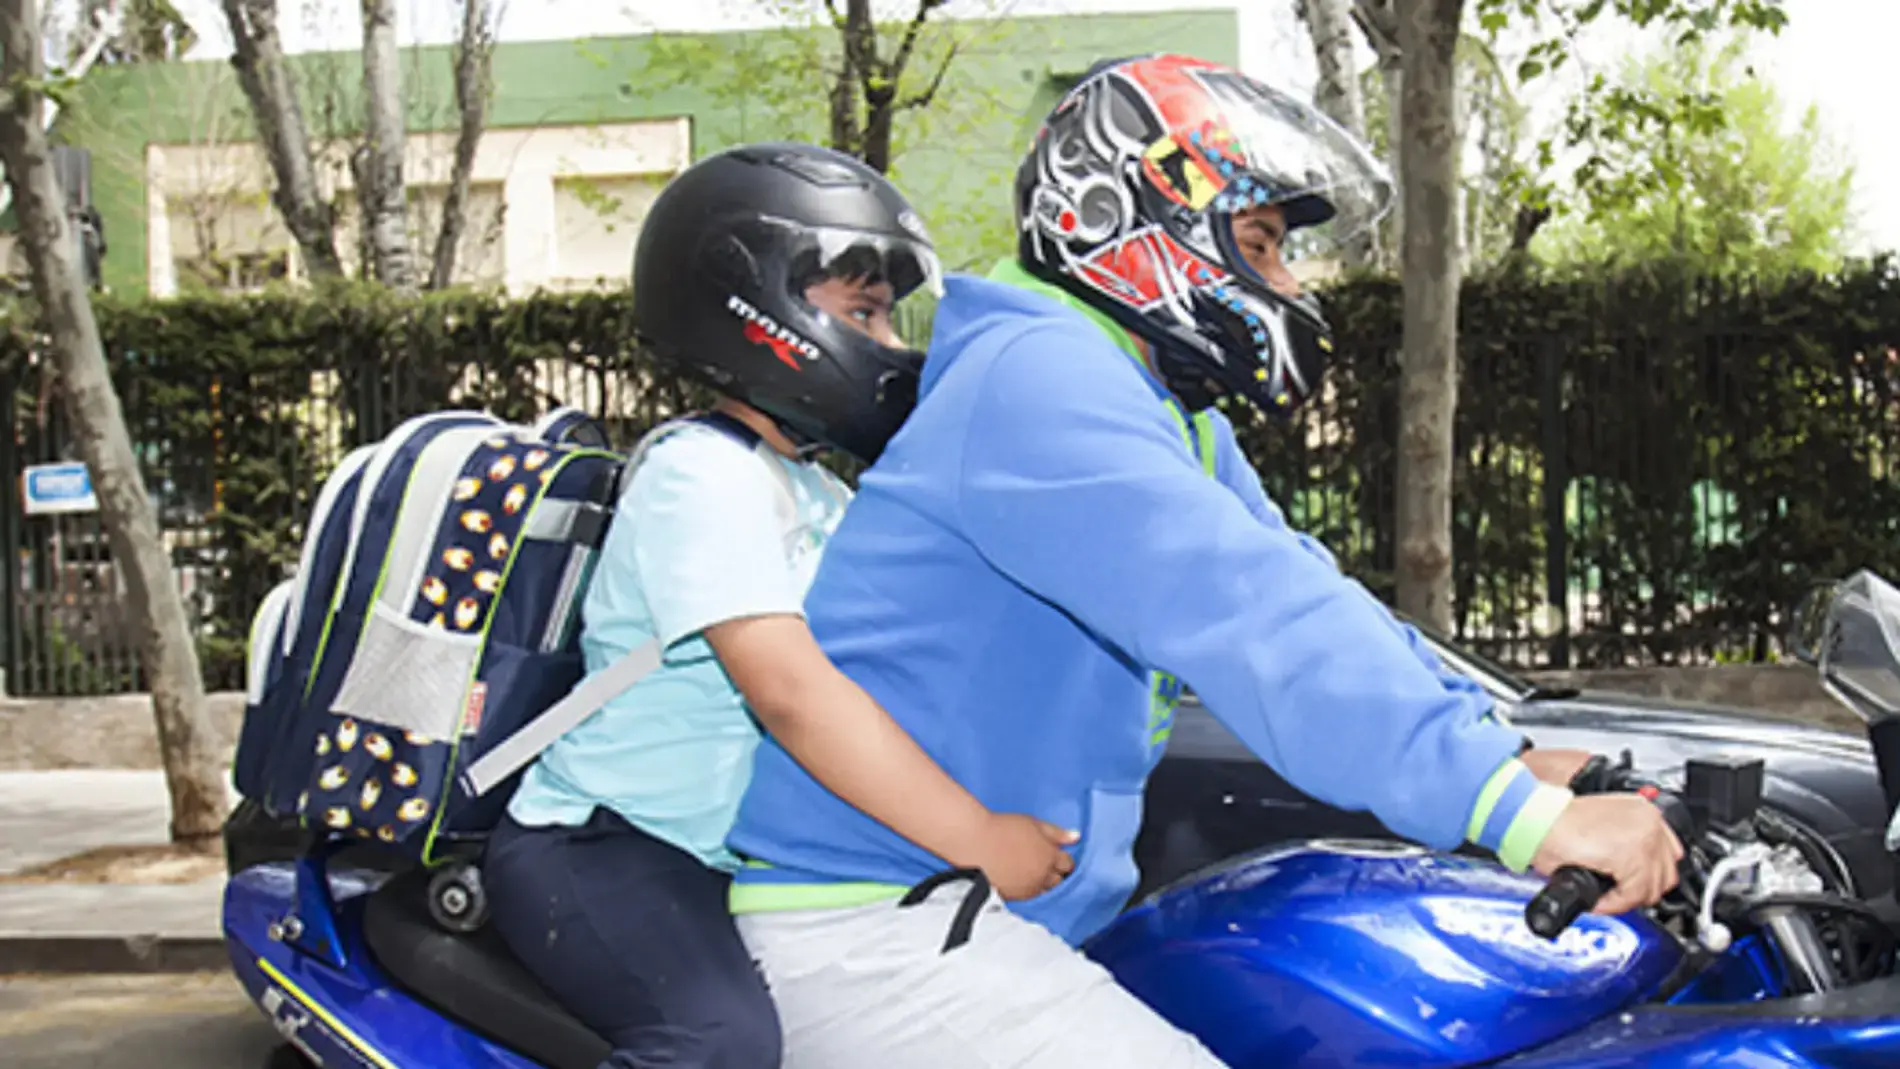 Policía de tránsito multa a motociclista por viajar con un niño a bordo/ Nicaragua Actual